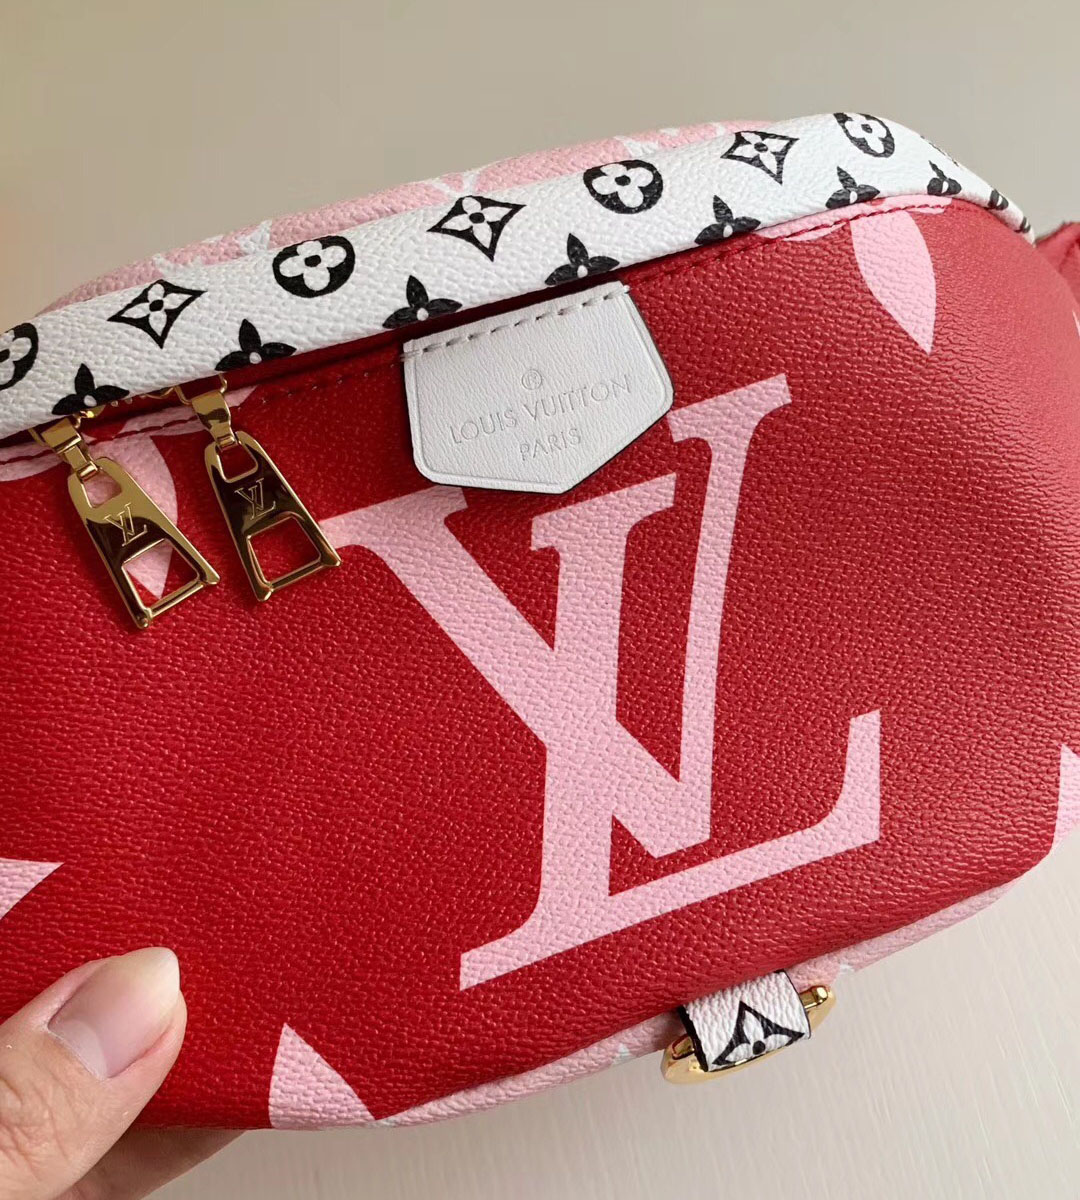 Buy Replica Louis Vuitton Bumbag M44575 Monogram Giant Red Pink - Buy Designer Bags, Sunglasses ...